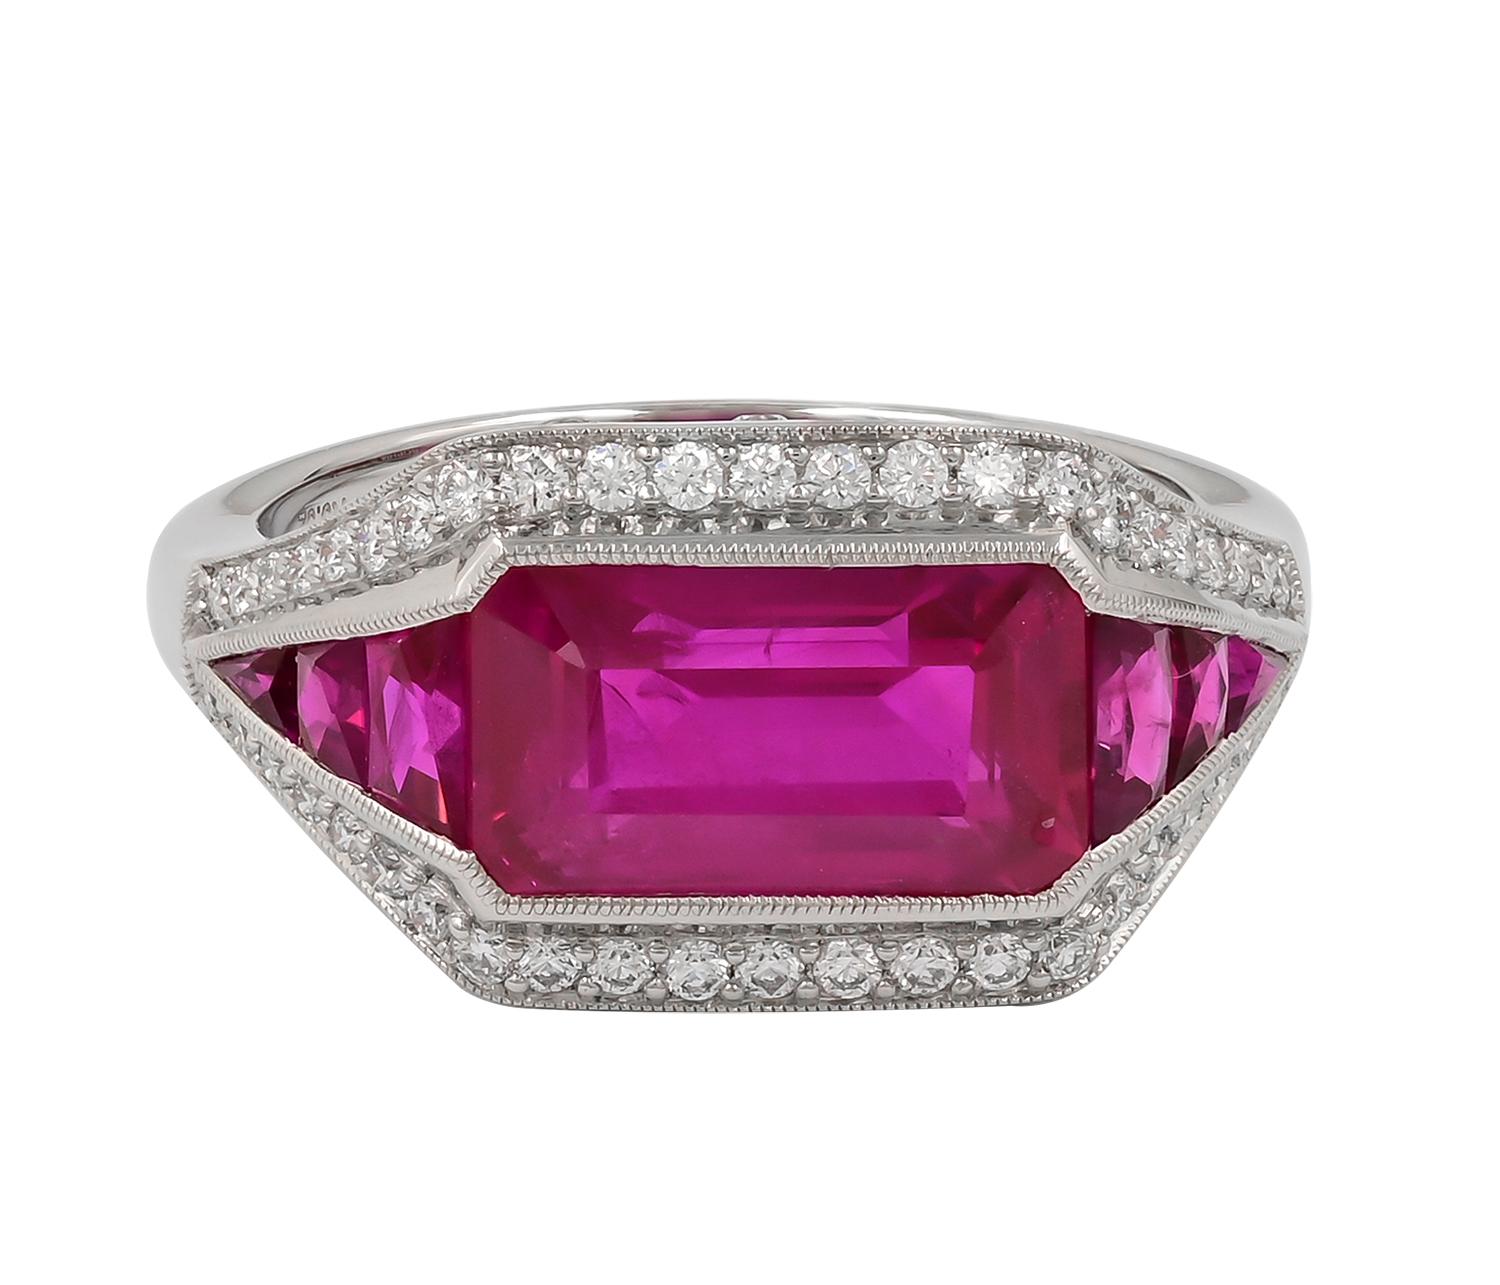 Bague en rubis et diamants par Sophia D. La bague présente un rubis de 3,52 carats avec des diamants de 0,59 carat flanqués de rubis de 0,45 carat en sertissage Art déco en platine. 

